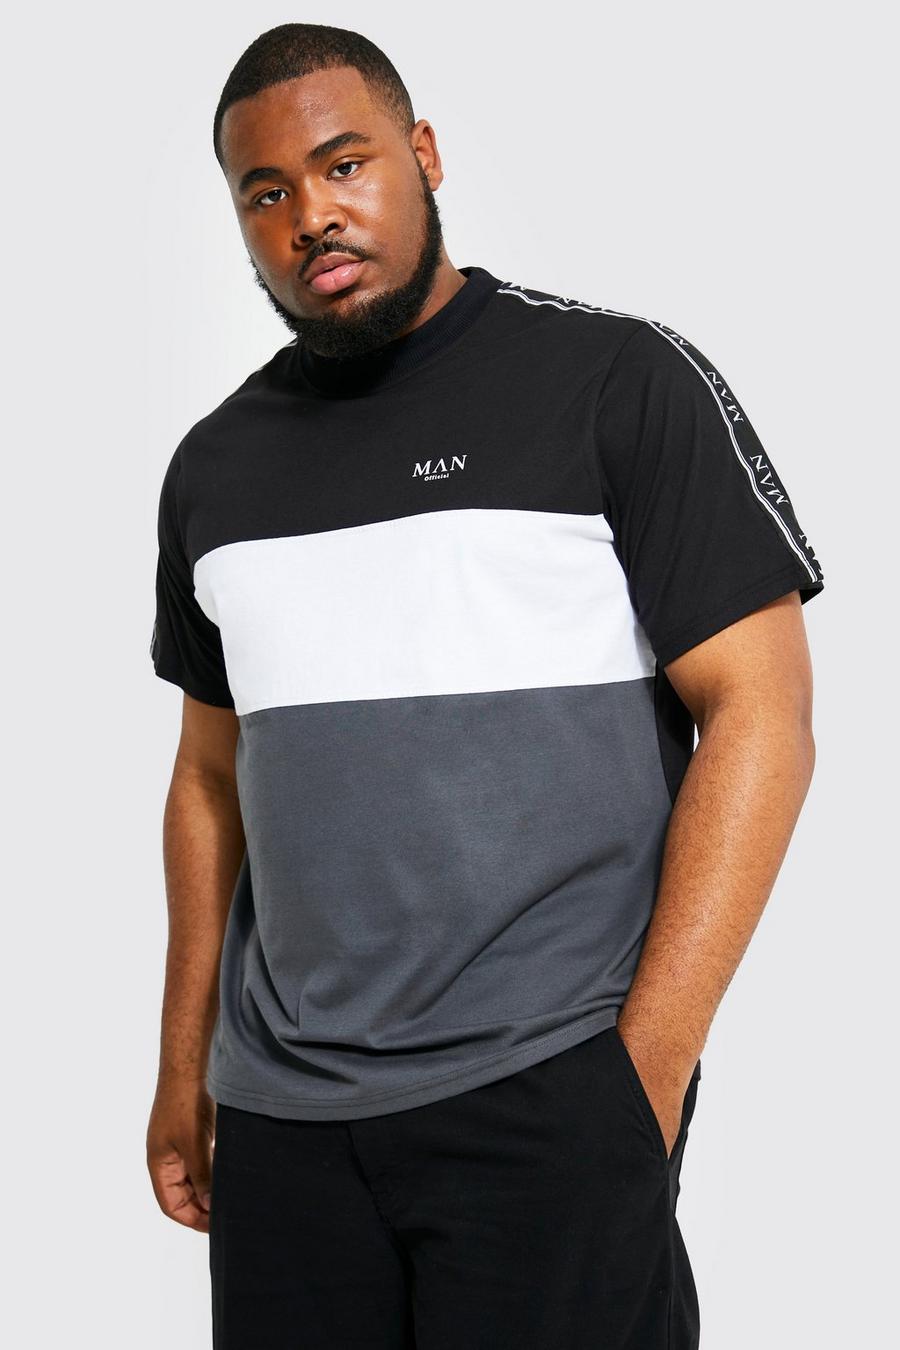 T-shirt Plus Size Man a blocchi di colore con caratteri romani e striscia, Black nero